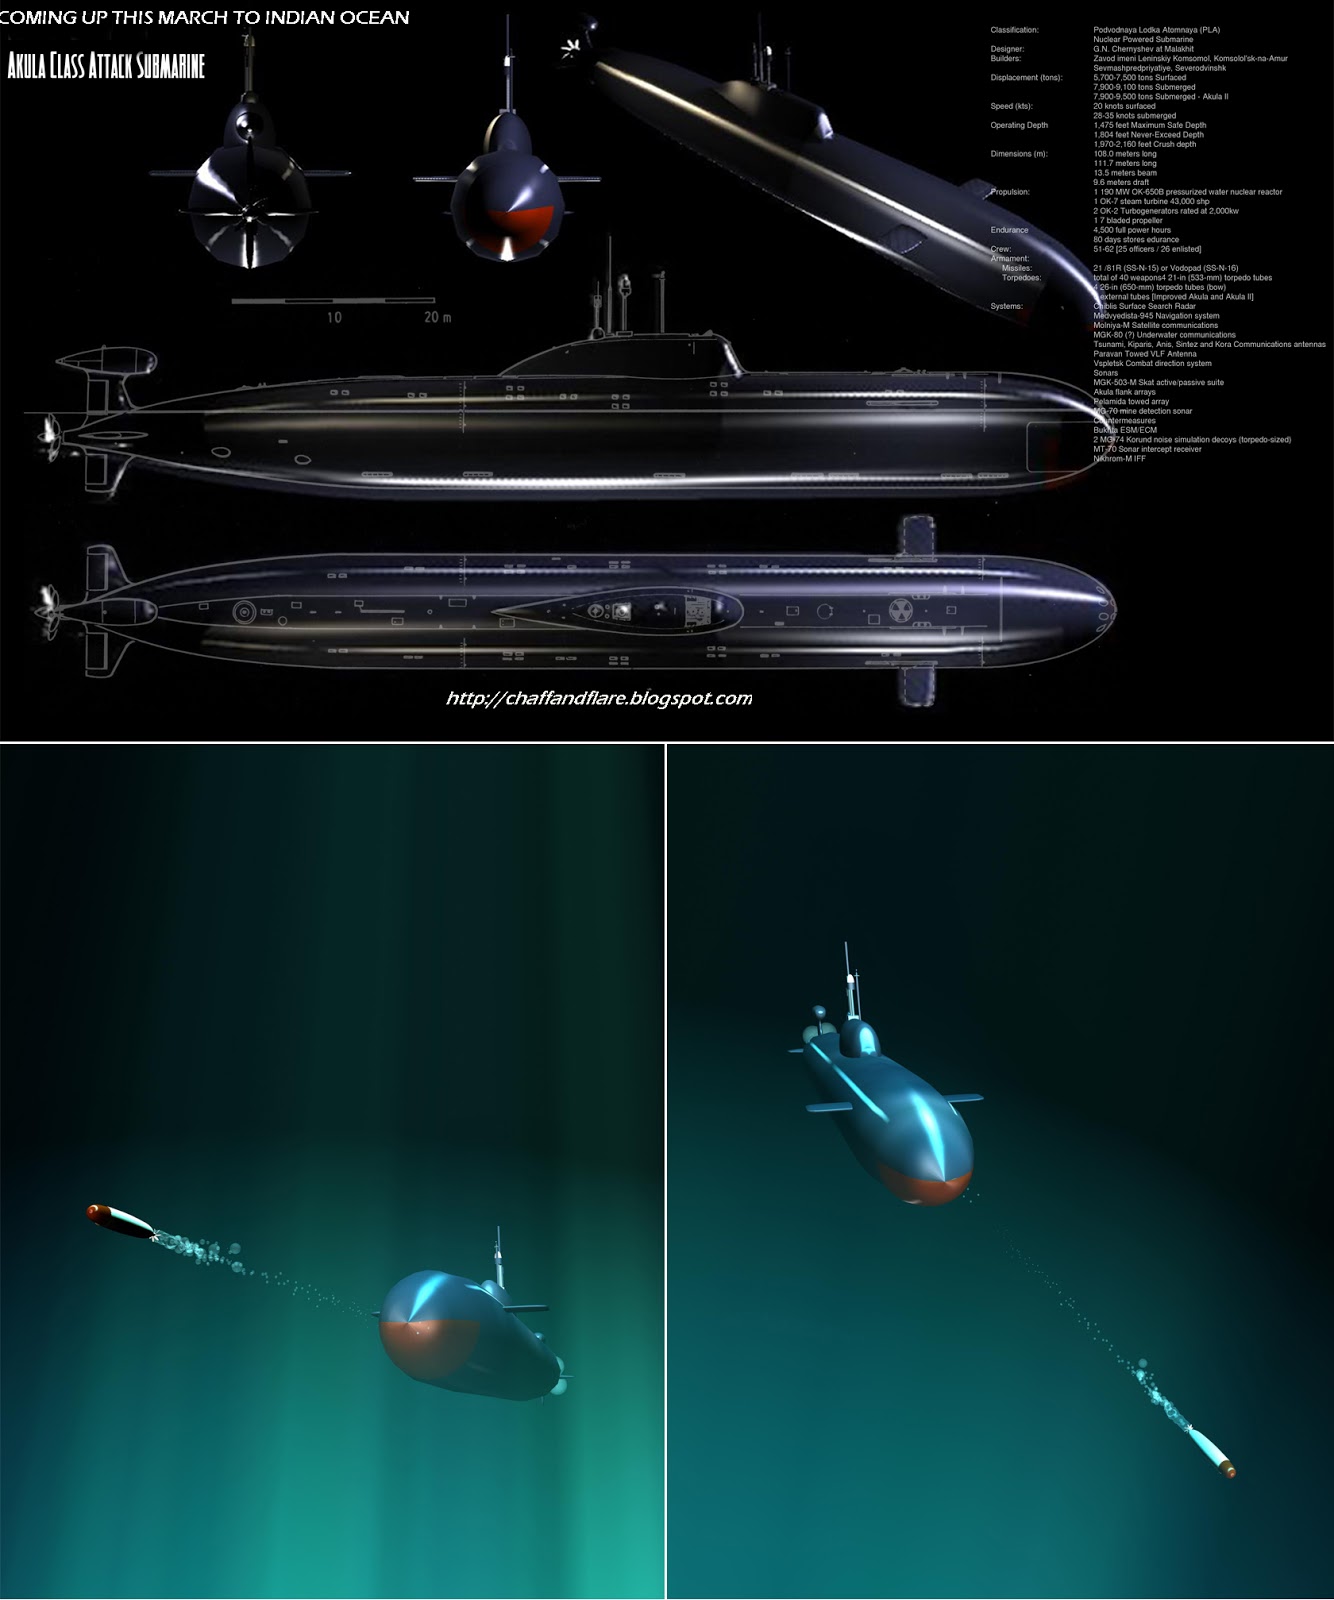 Akula_Class_Submarine_by_PANDORA.jpg